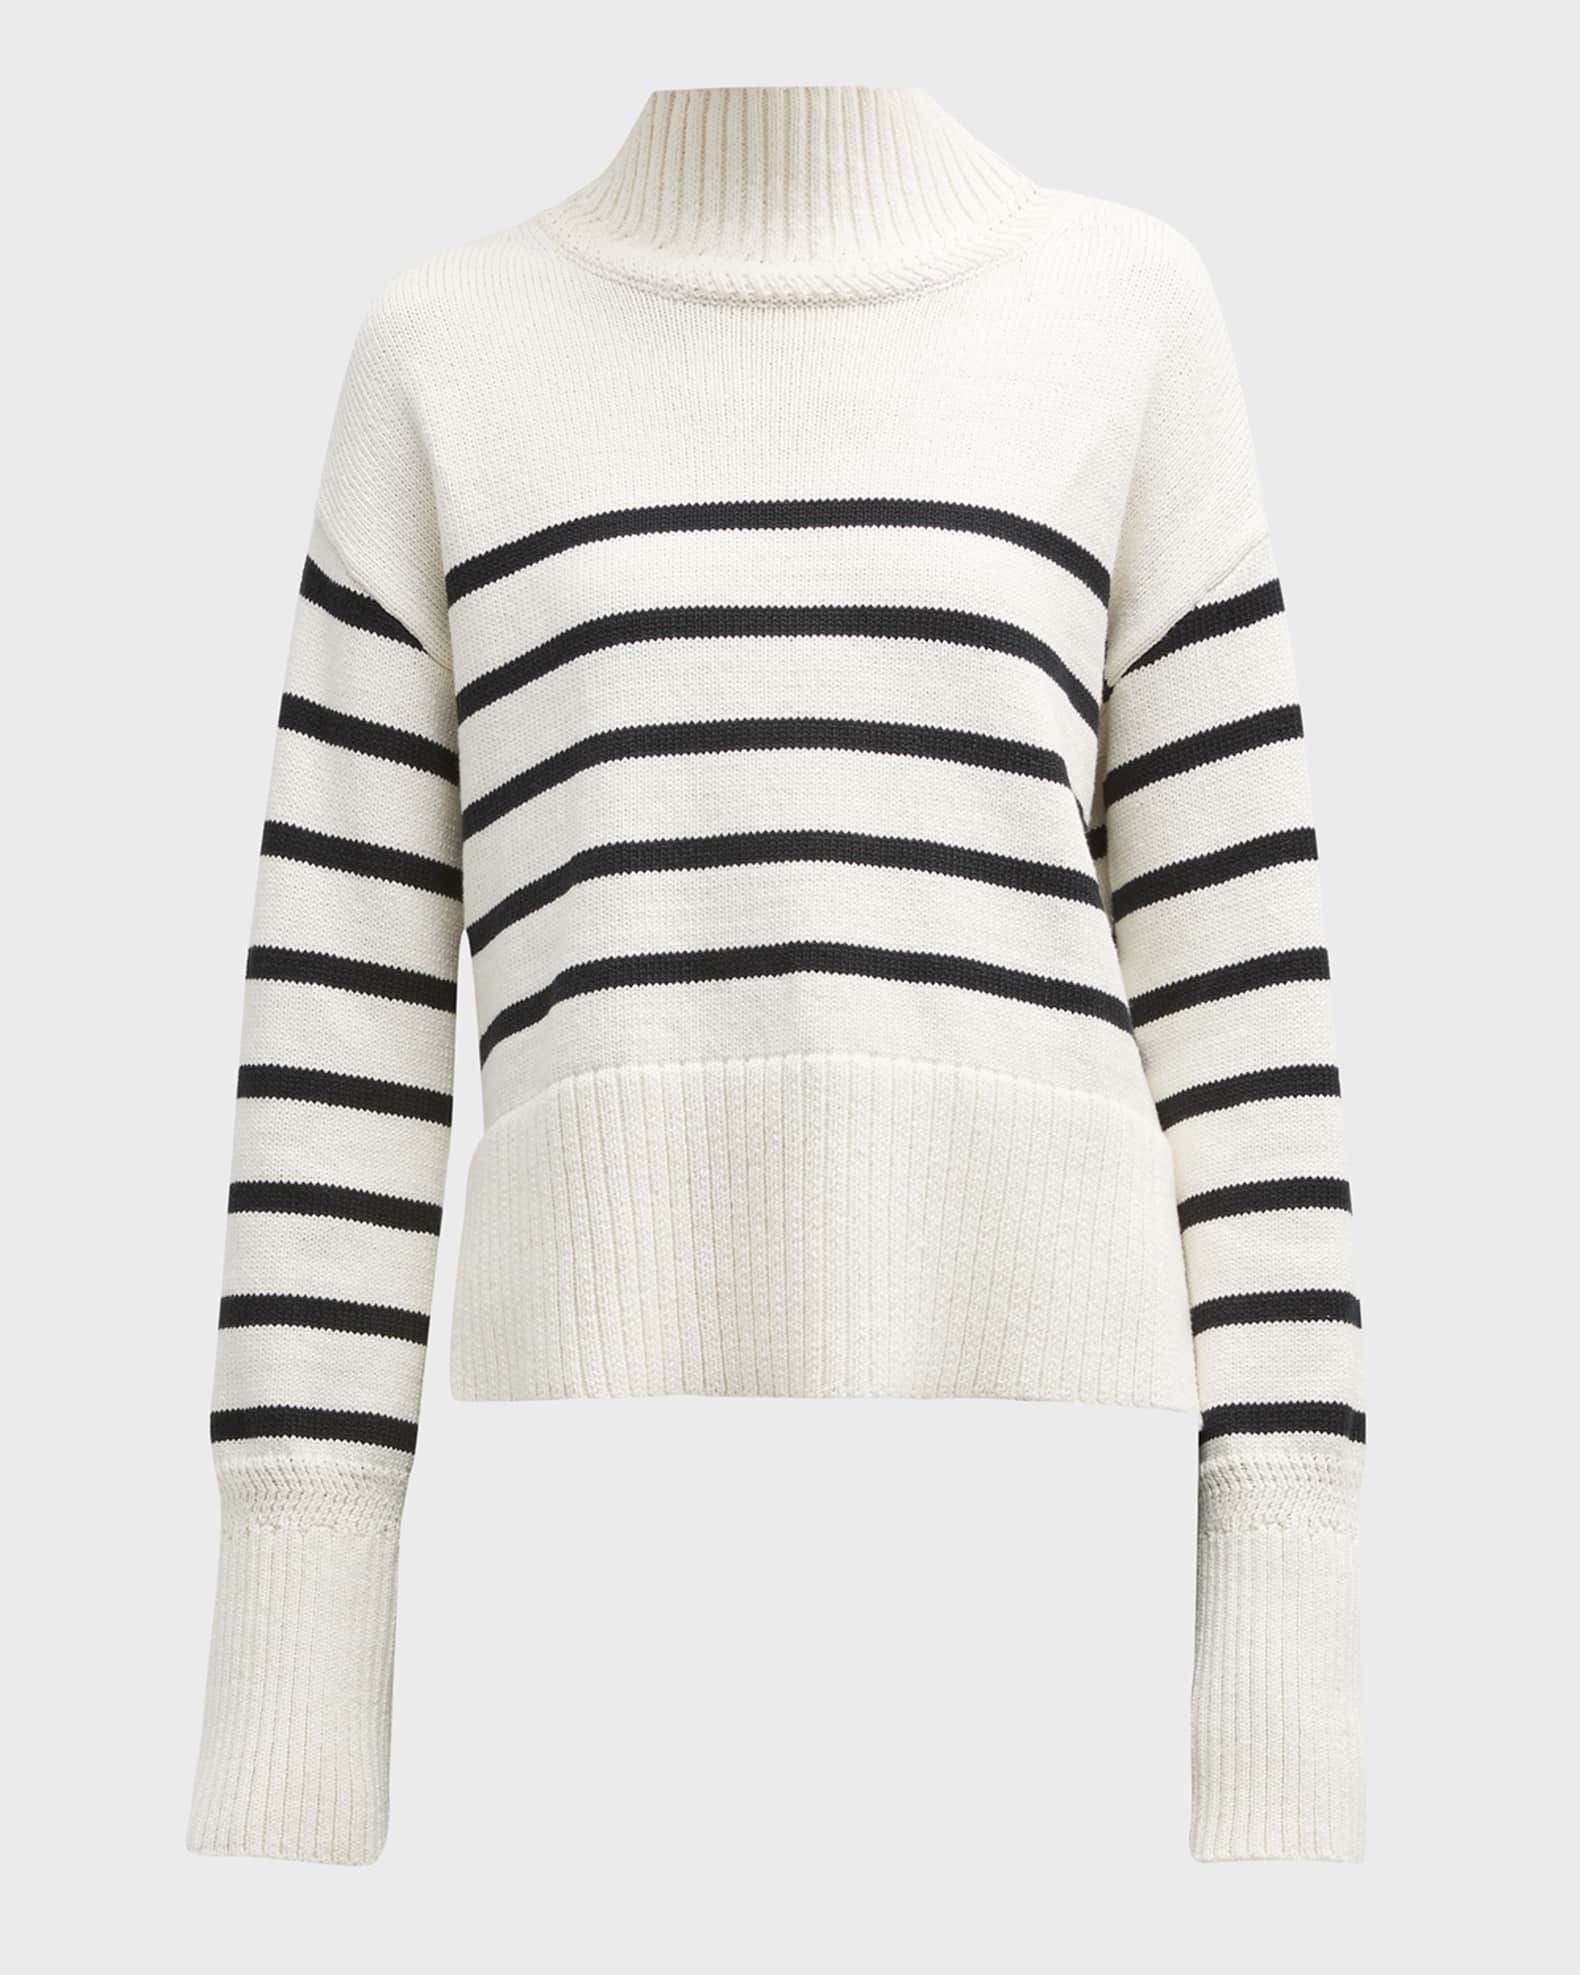 Veronica Beard Jeans Lancetti Striped Turtleneck Sweater | Neiman Marcus